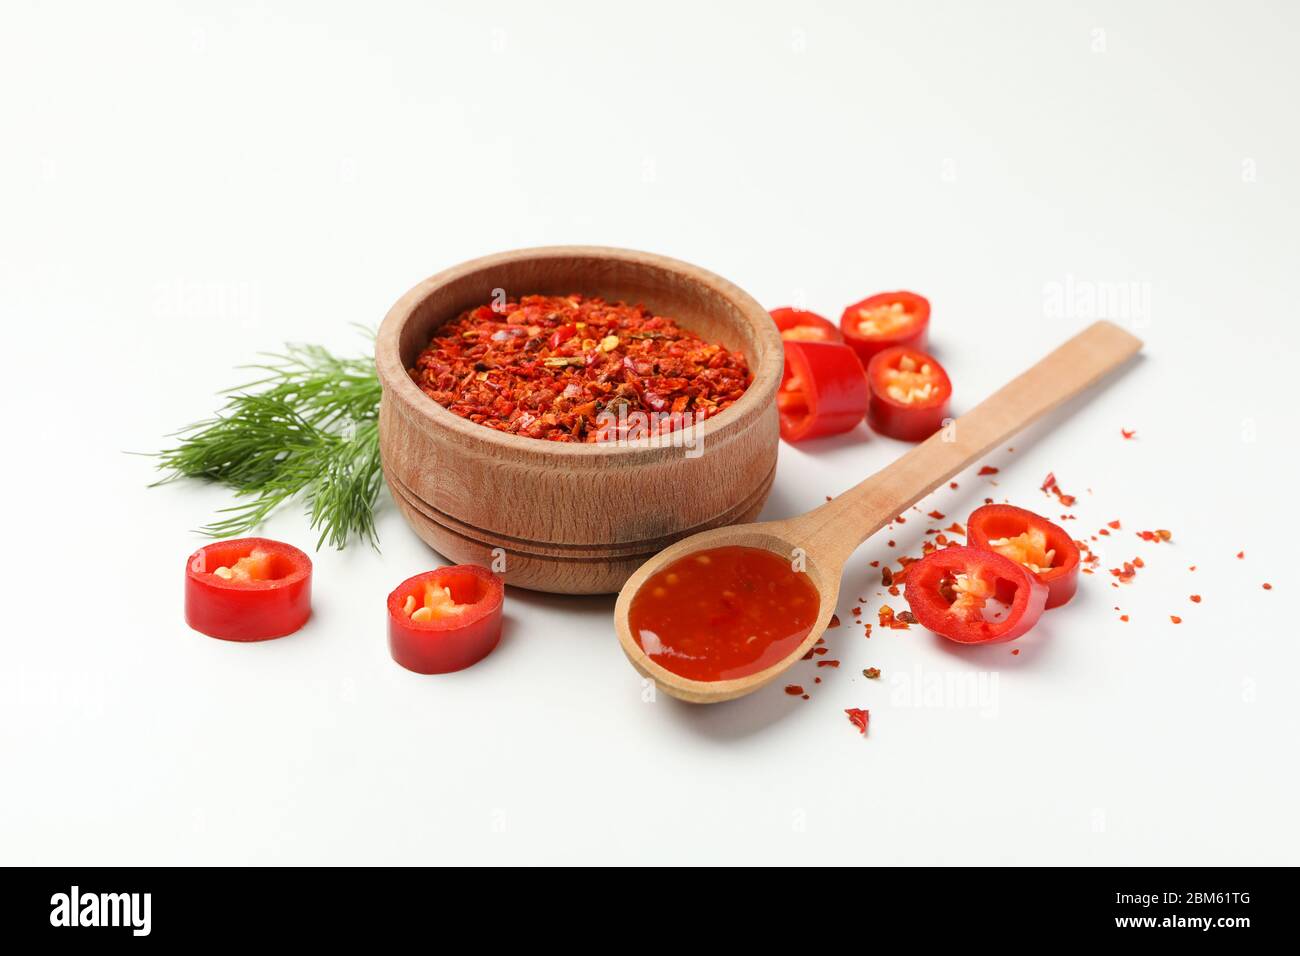 Composición con Chile, especias y salsa sobre fondo blanco Foto de stock